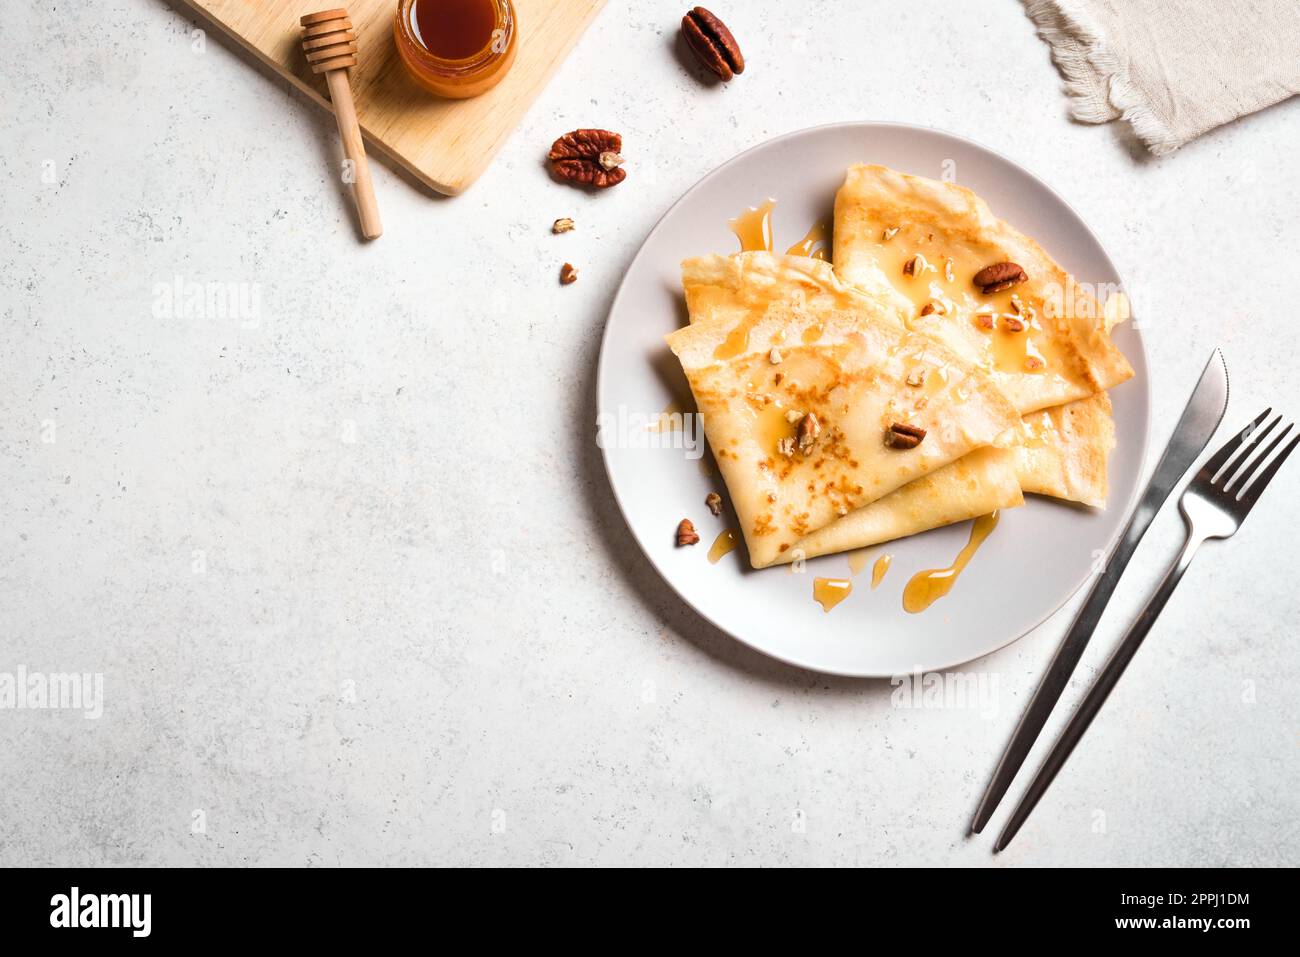 Crêpes Suzette au miel et noix de pécan sur fond blanc. Délicieuses crêpes faites maison pour le petit déjeuner. Banque D'Images